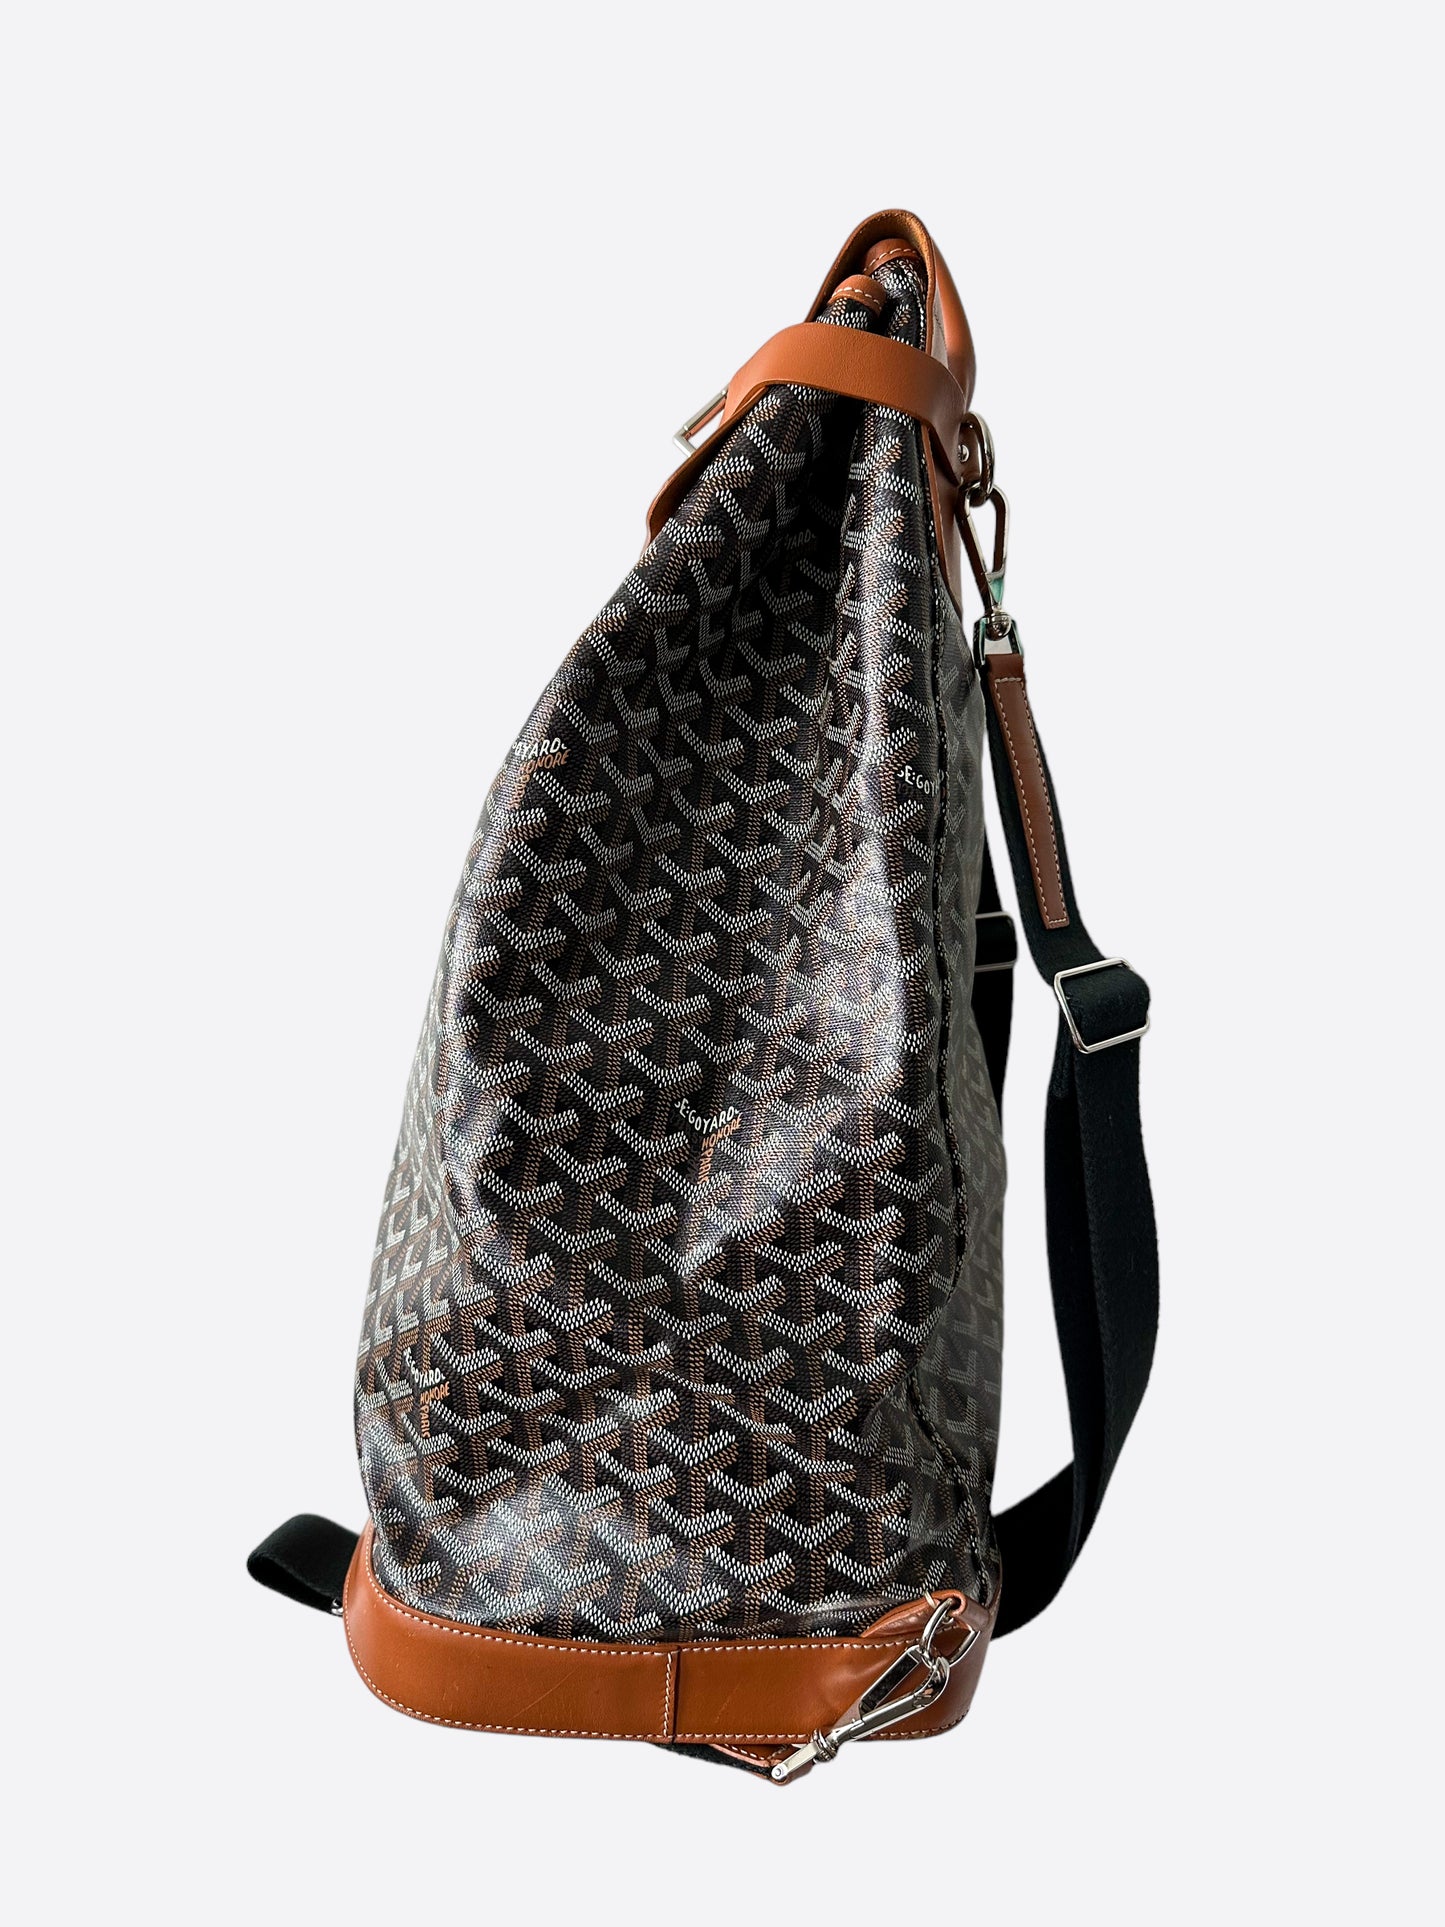 Goyard Steamer PM w/ Strap - Grey Backpacks, Handbags - GOY32692